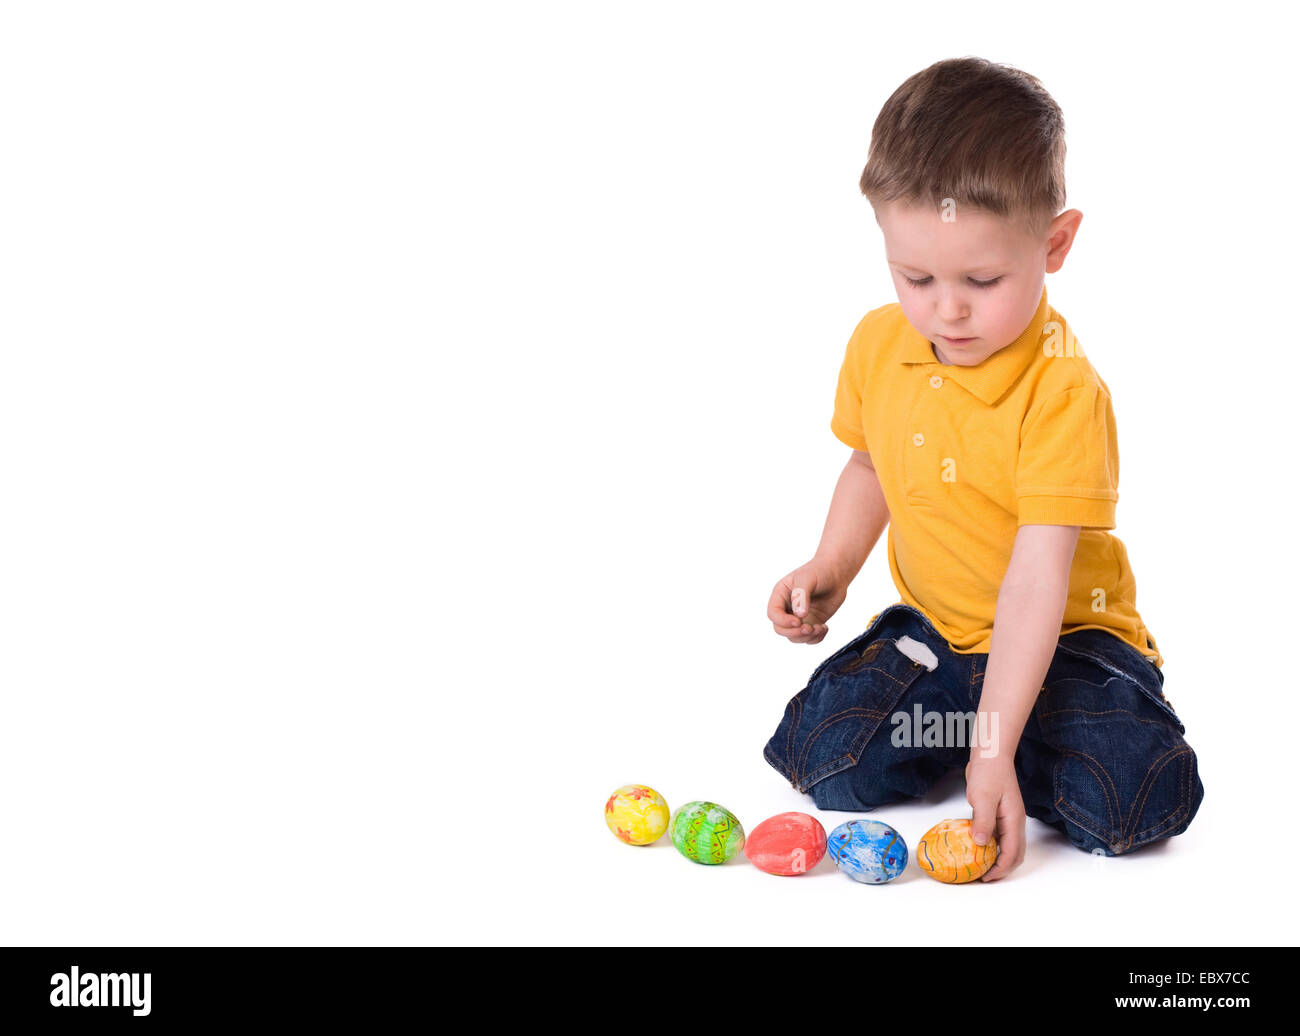 Lindo muchacho de 3 años jugando con los huevos de Pascua Foto de stock